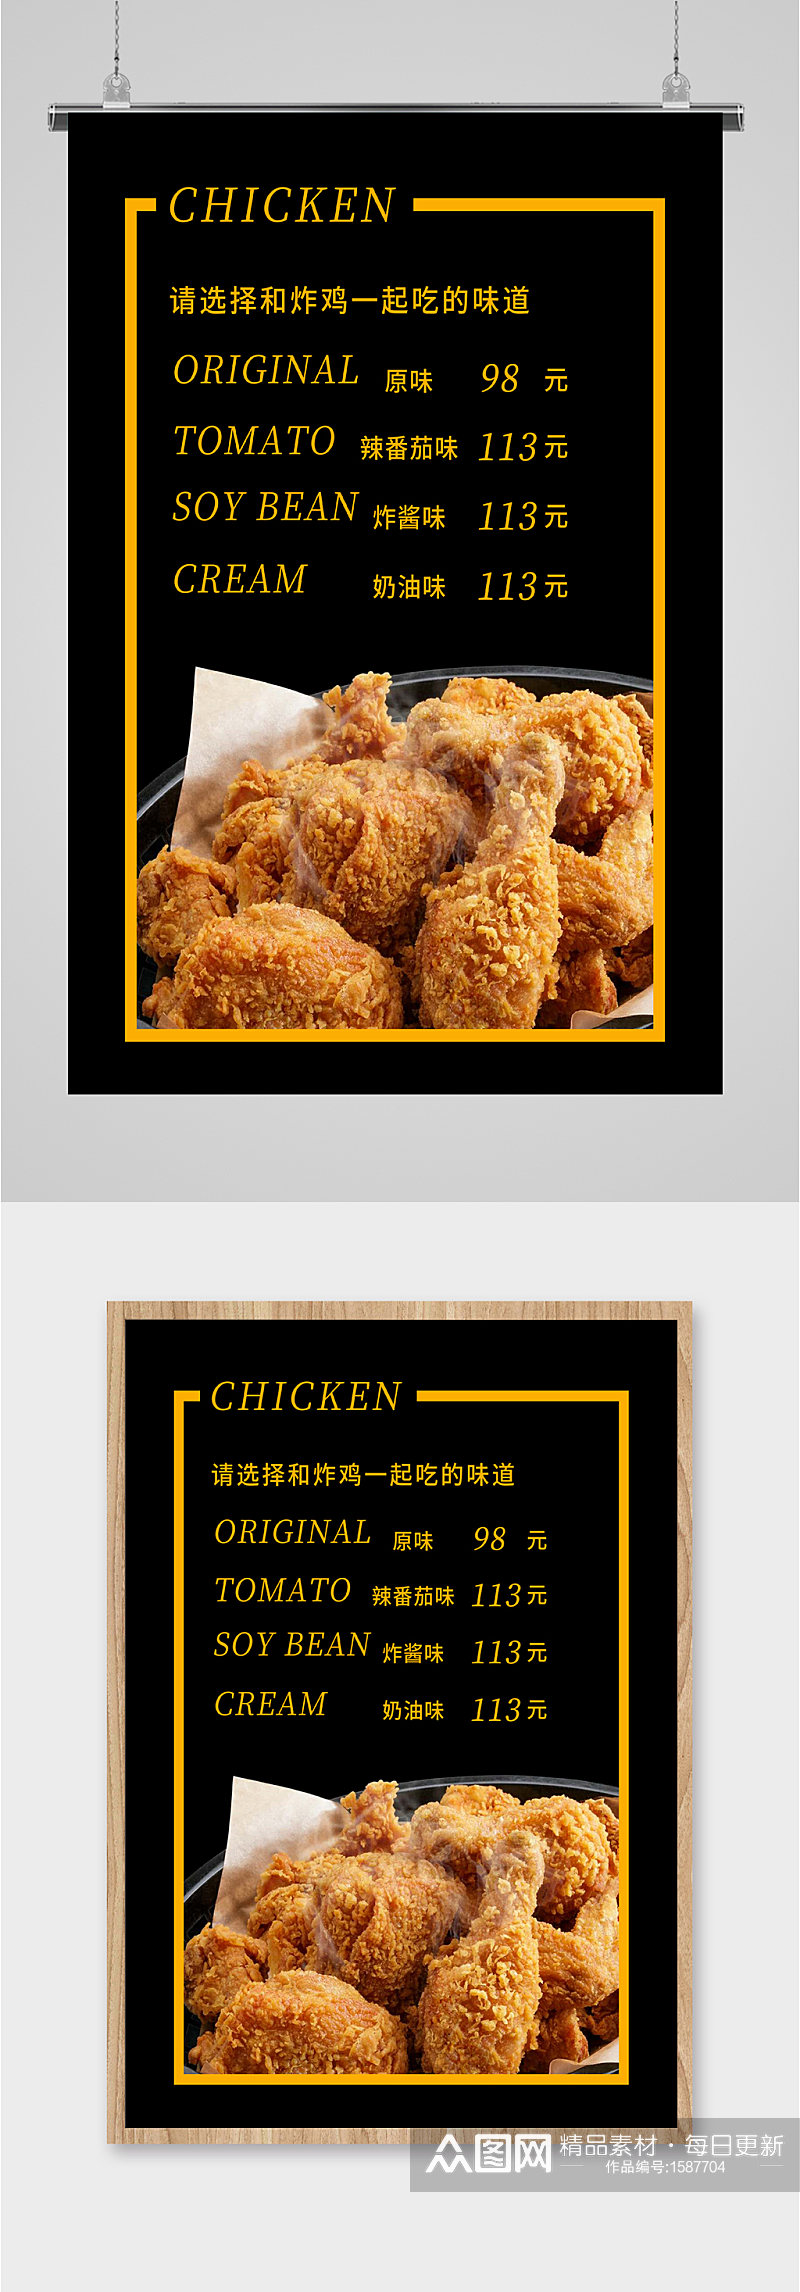 美味炸鸡多重口味宣传海报素材